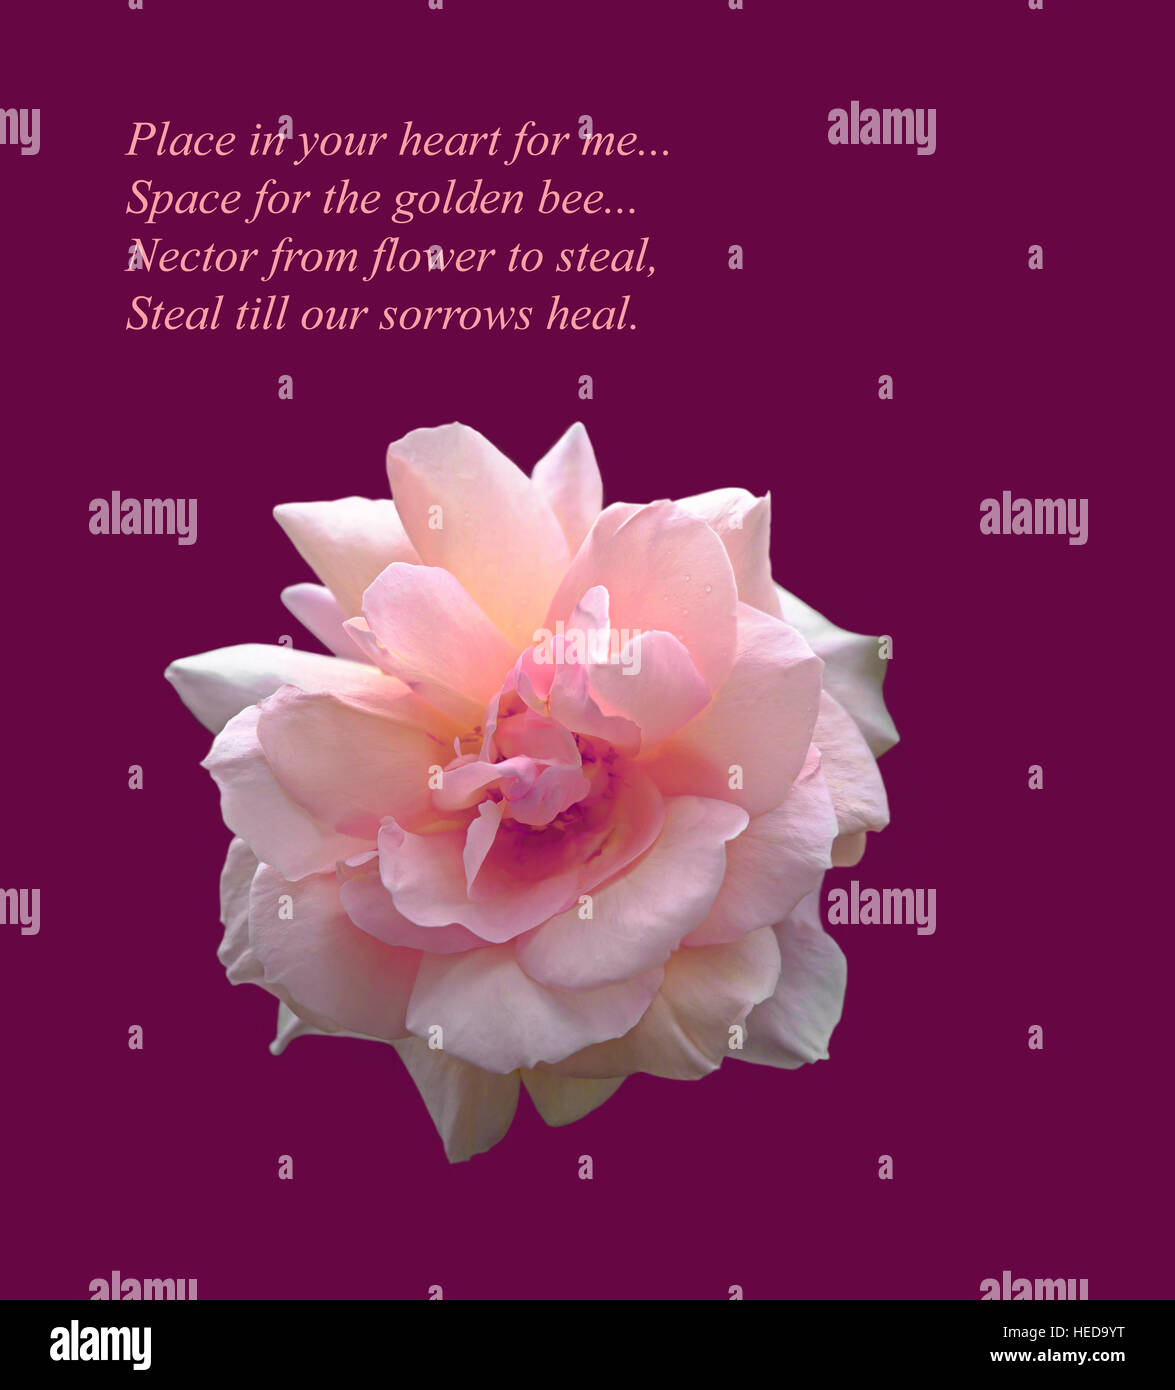 Belle rose rose cut-out sur fond violet. Un droit d'inspiration originale et romantique vers par le poète Russ Merne. Banque D'Images